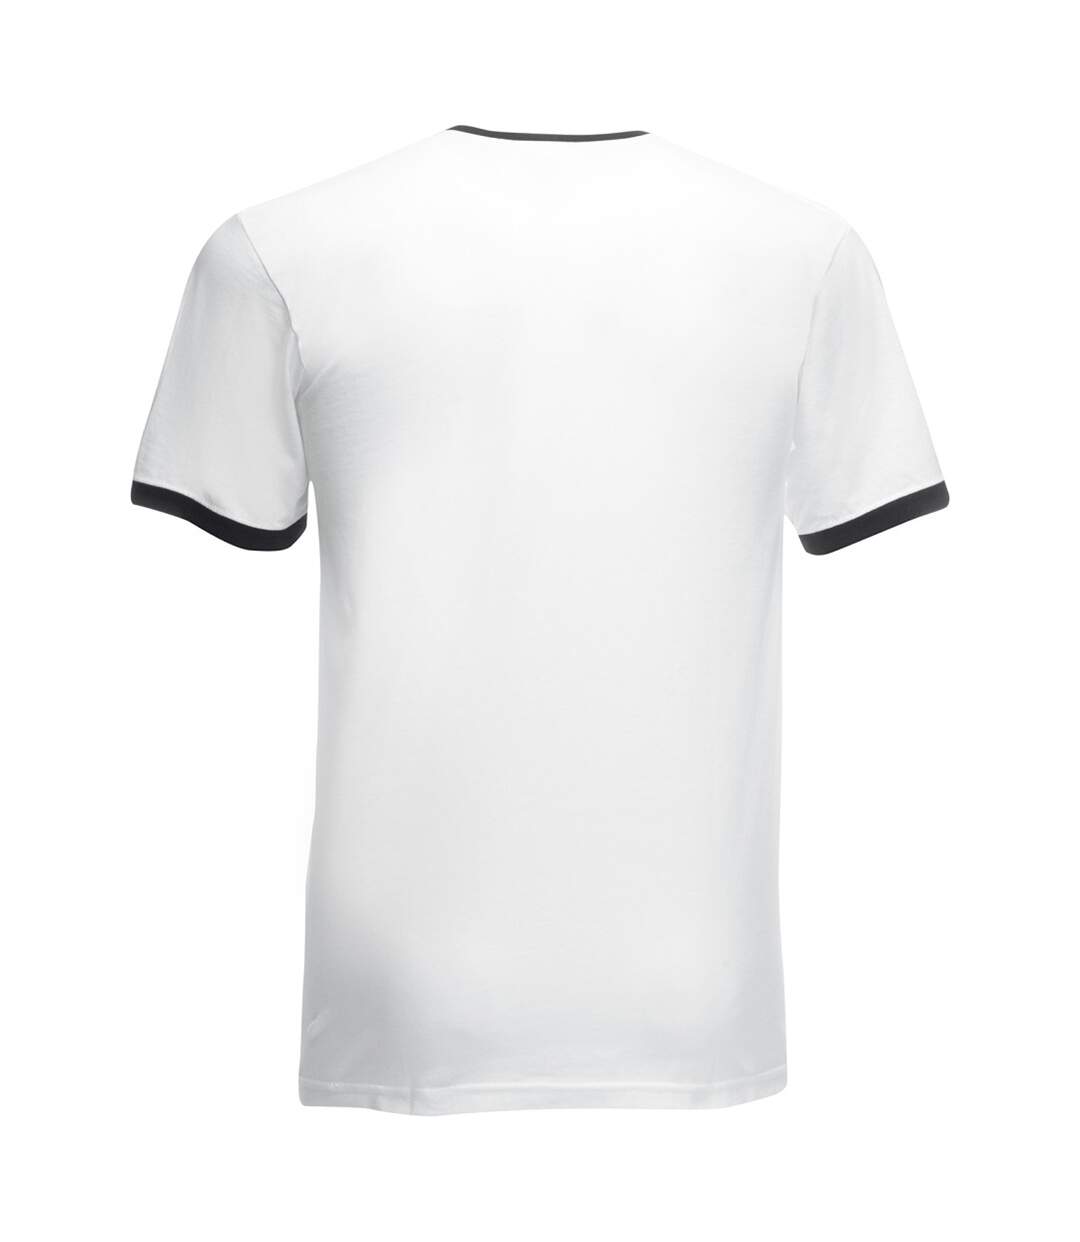 Fruit Of The Loom Mens Ringer Short Sleeve T-Shirt (White/Black) - UTBC342